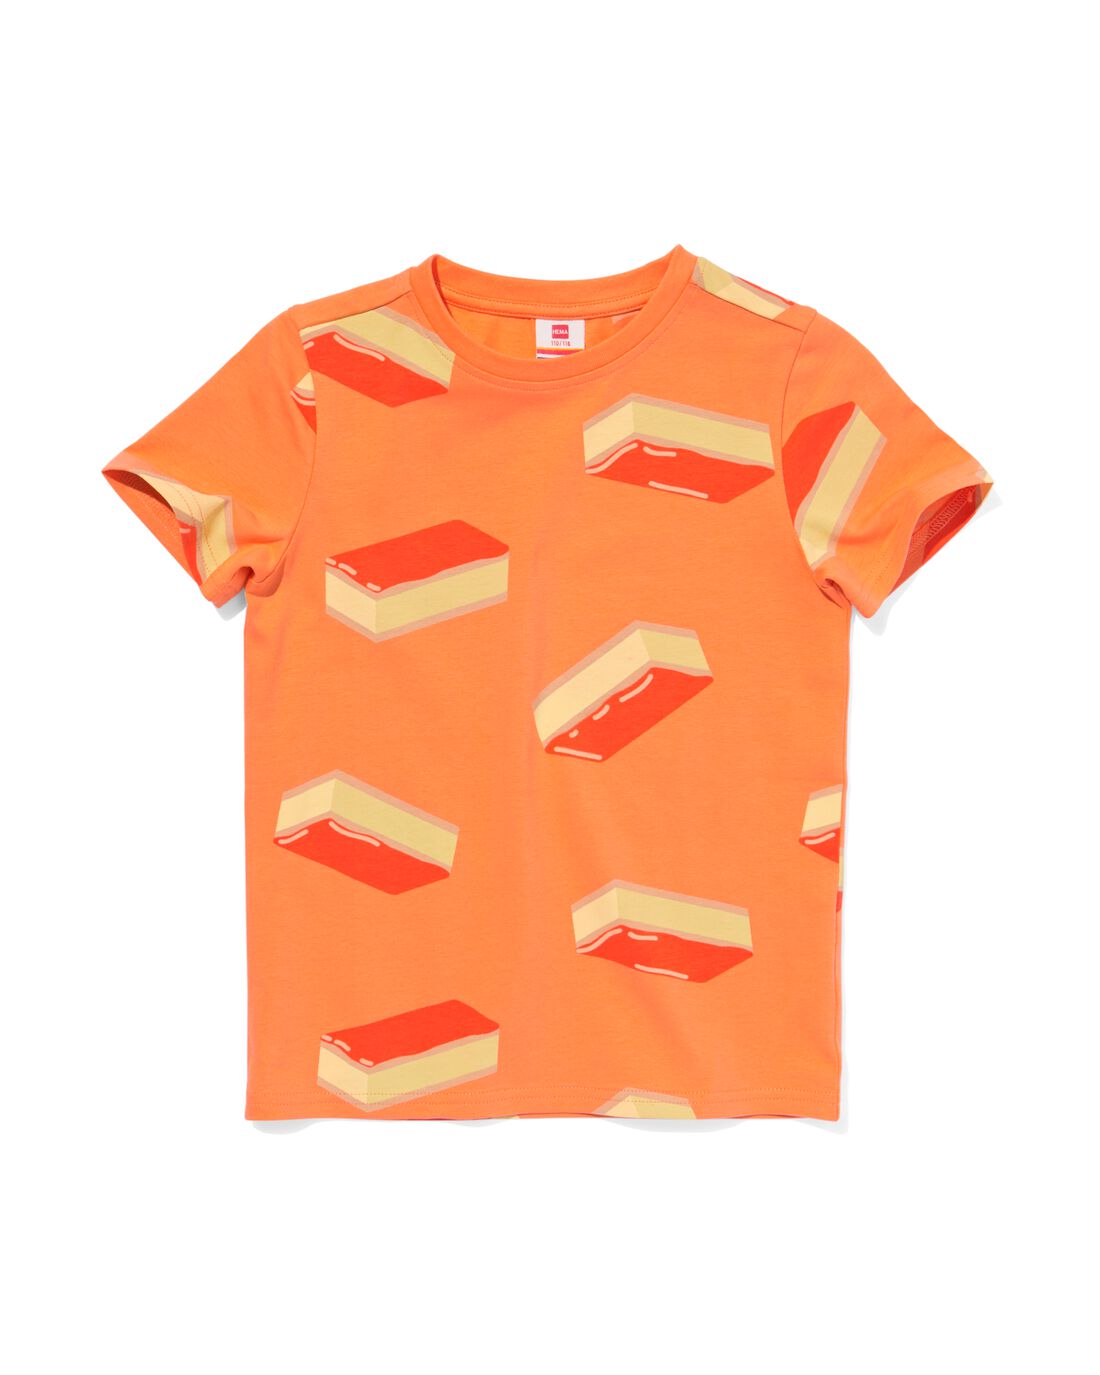 HEMA Kinder T-shirt Oranje Tompouce Oranje (oranje)